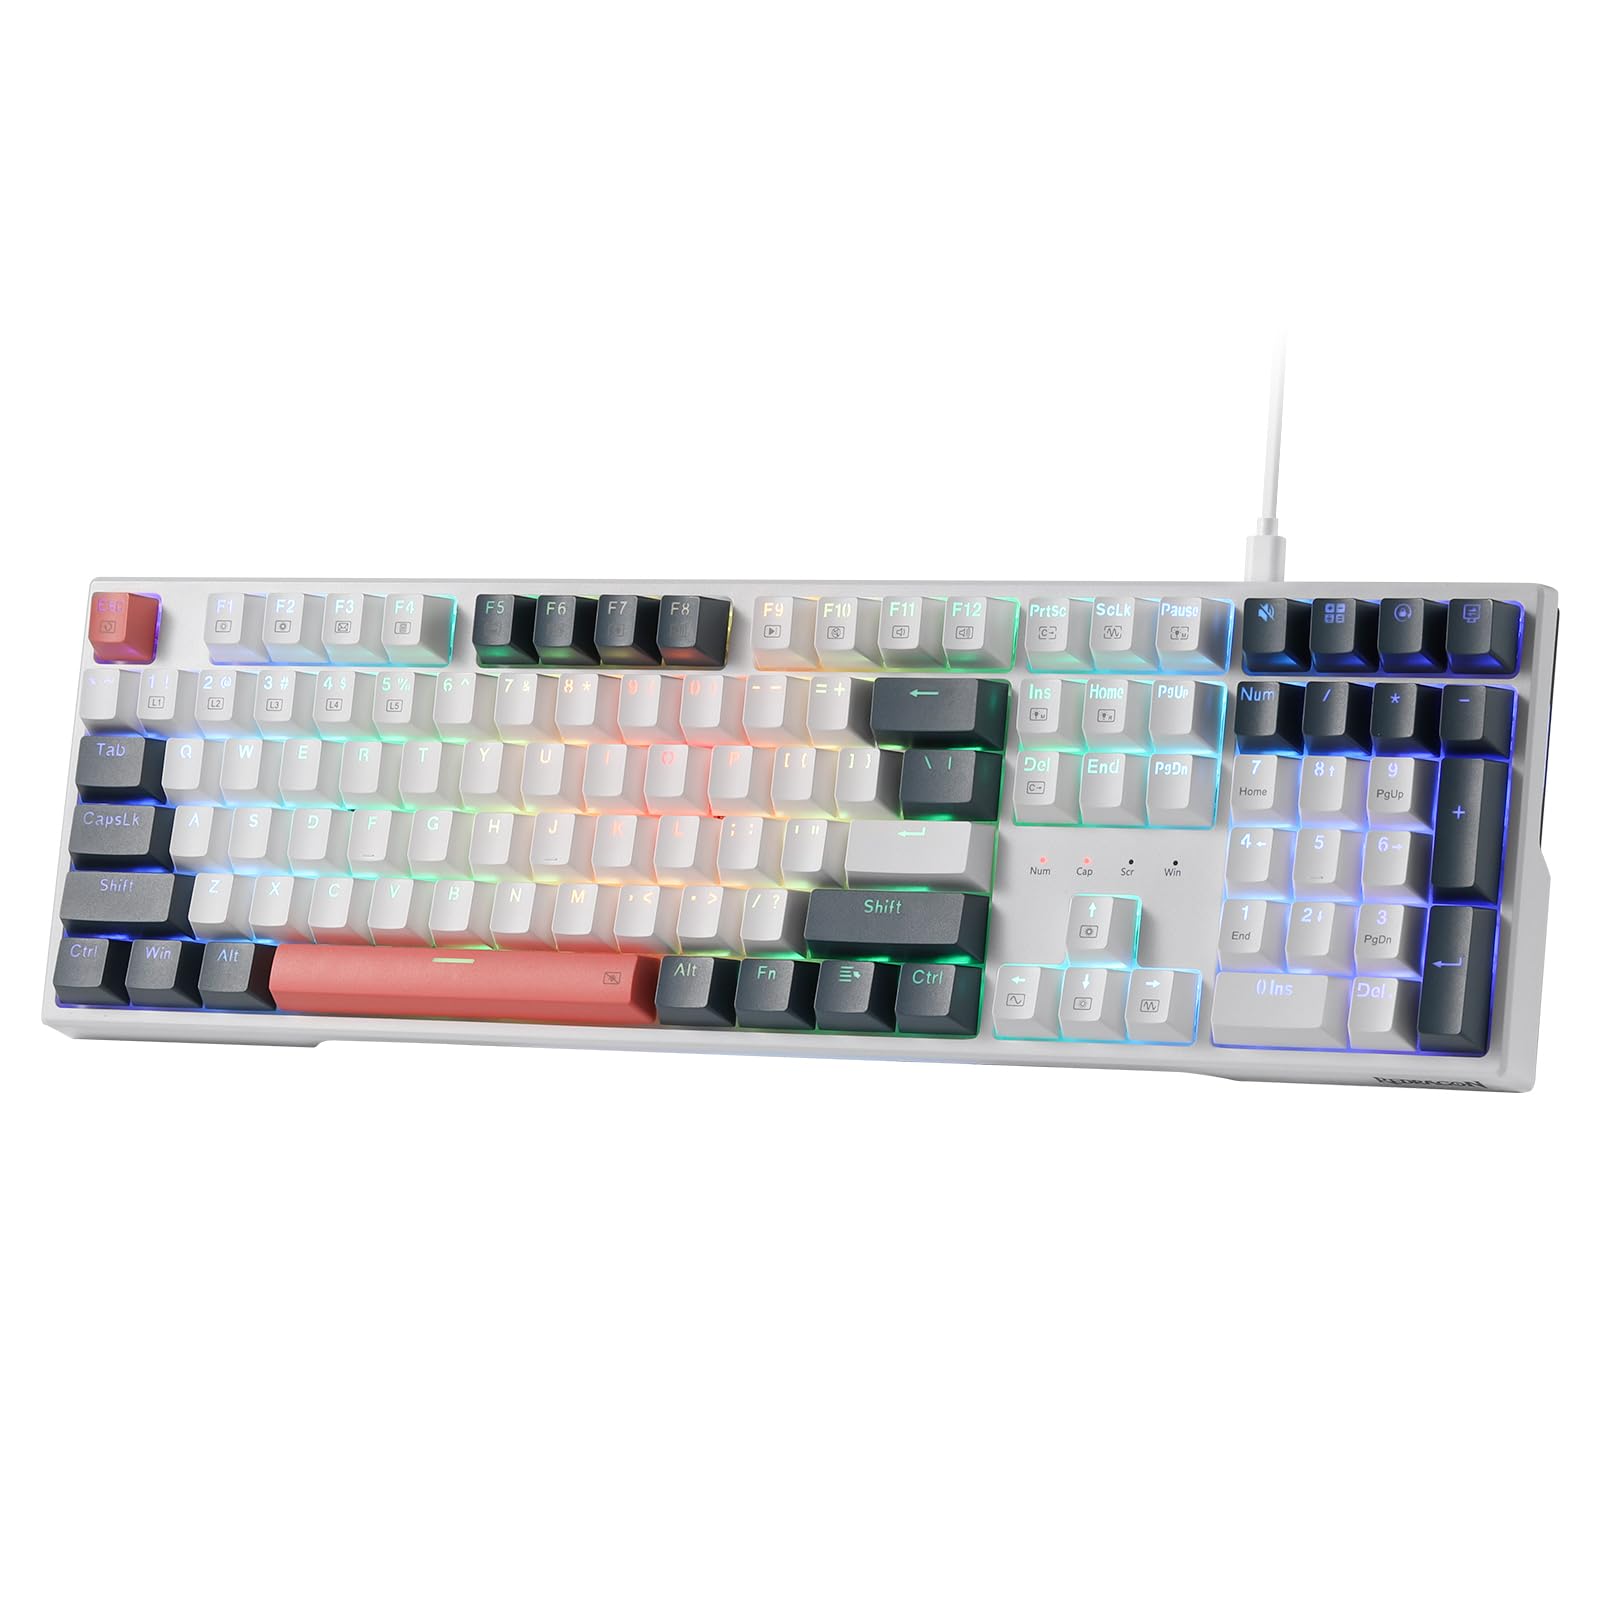 Redragon K668 RGB-Gaming-Tastatur, 104 Tasten + 4 zusätzliche Hotkeys, kabelgebundene mechanische Tastatur mit schallabsorbierendem Schaumstoff, Tastenkappen, roter Schalter